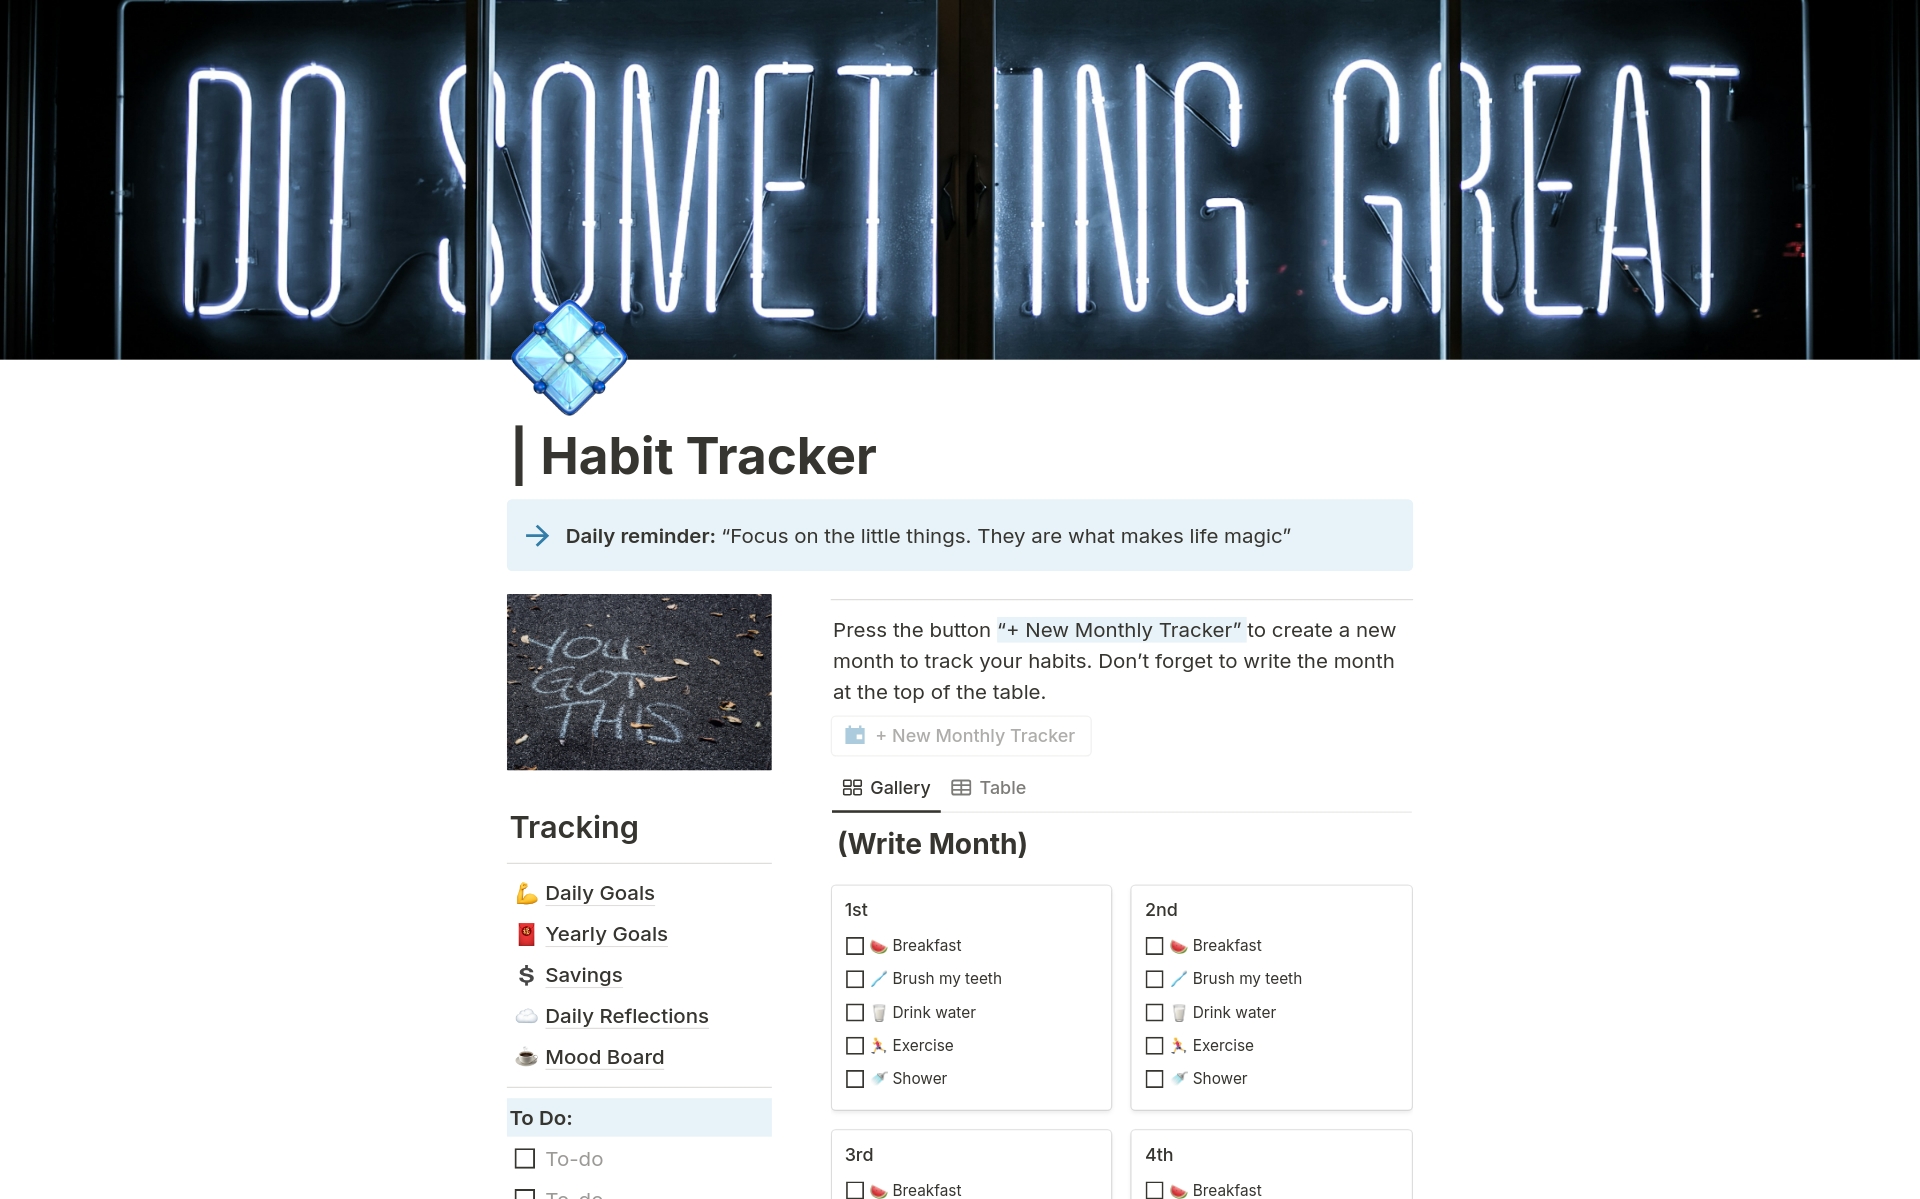 Uma prévia do modelo para | Habit Tracker